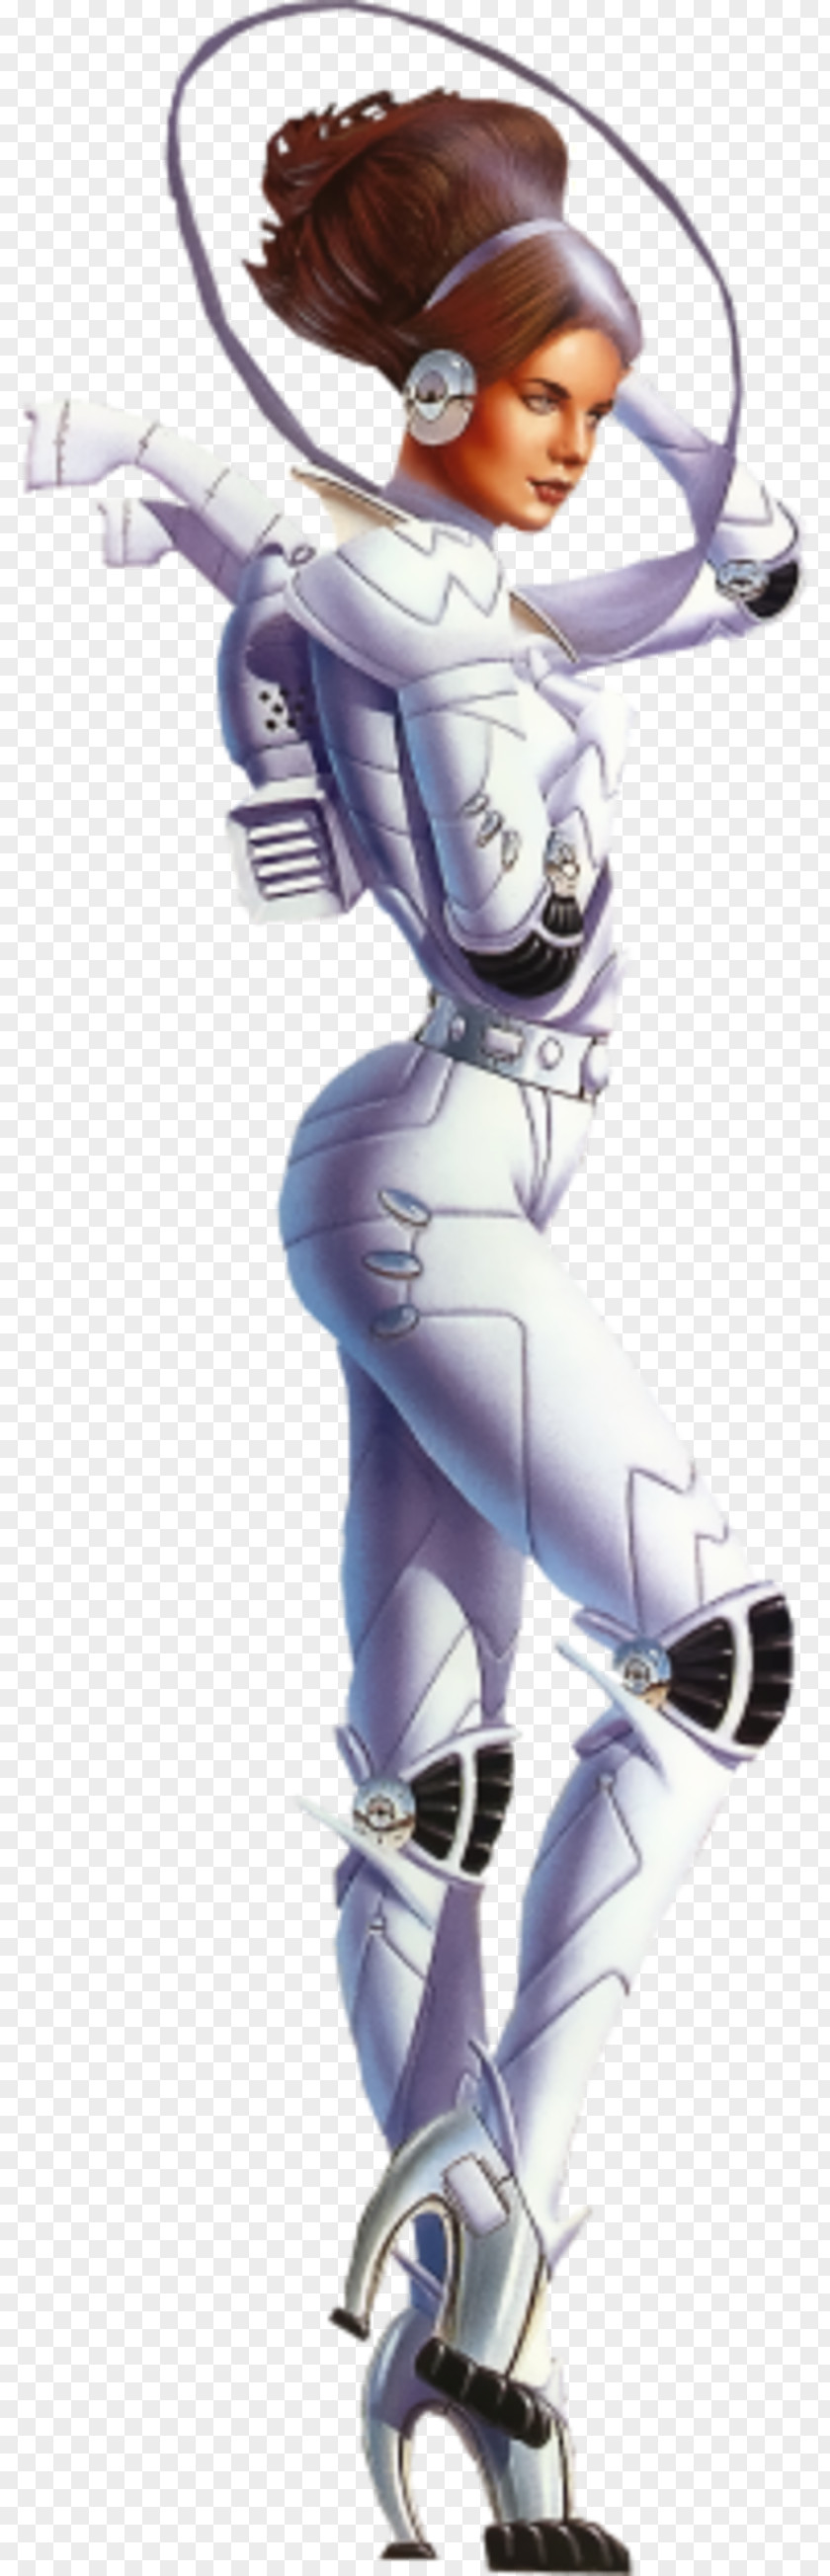 Baseball Cartoon Character Fiction PNG